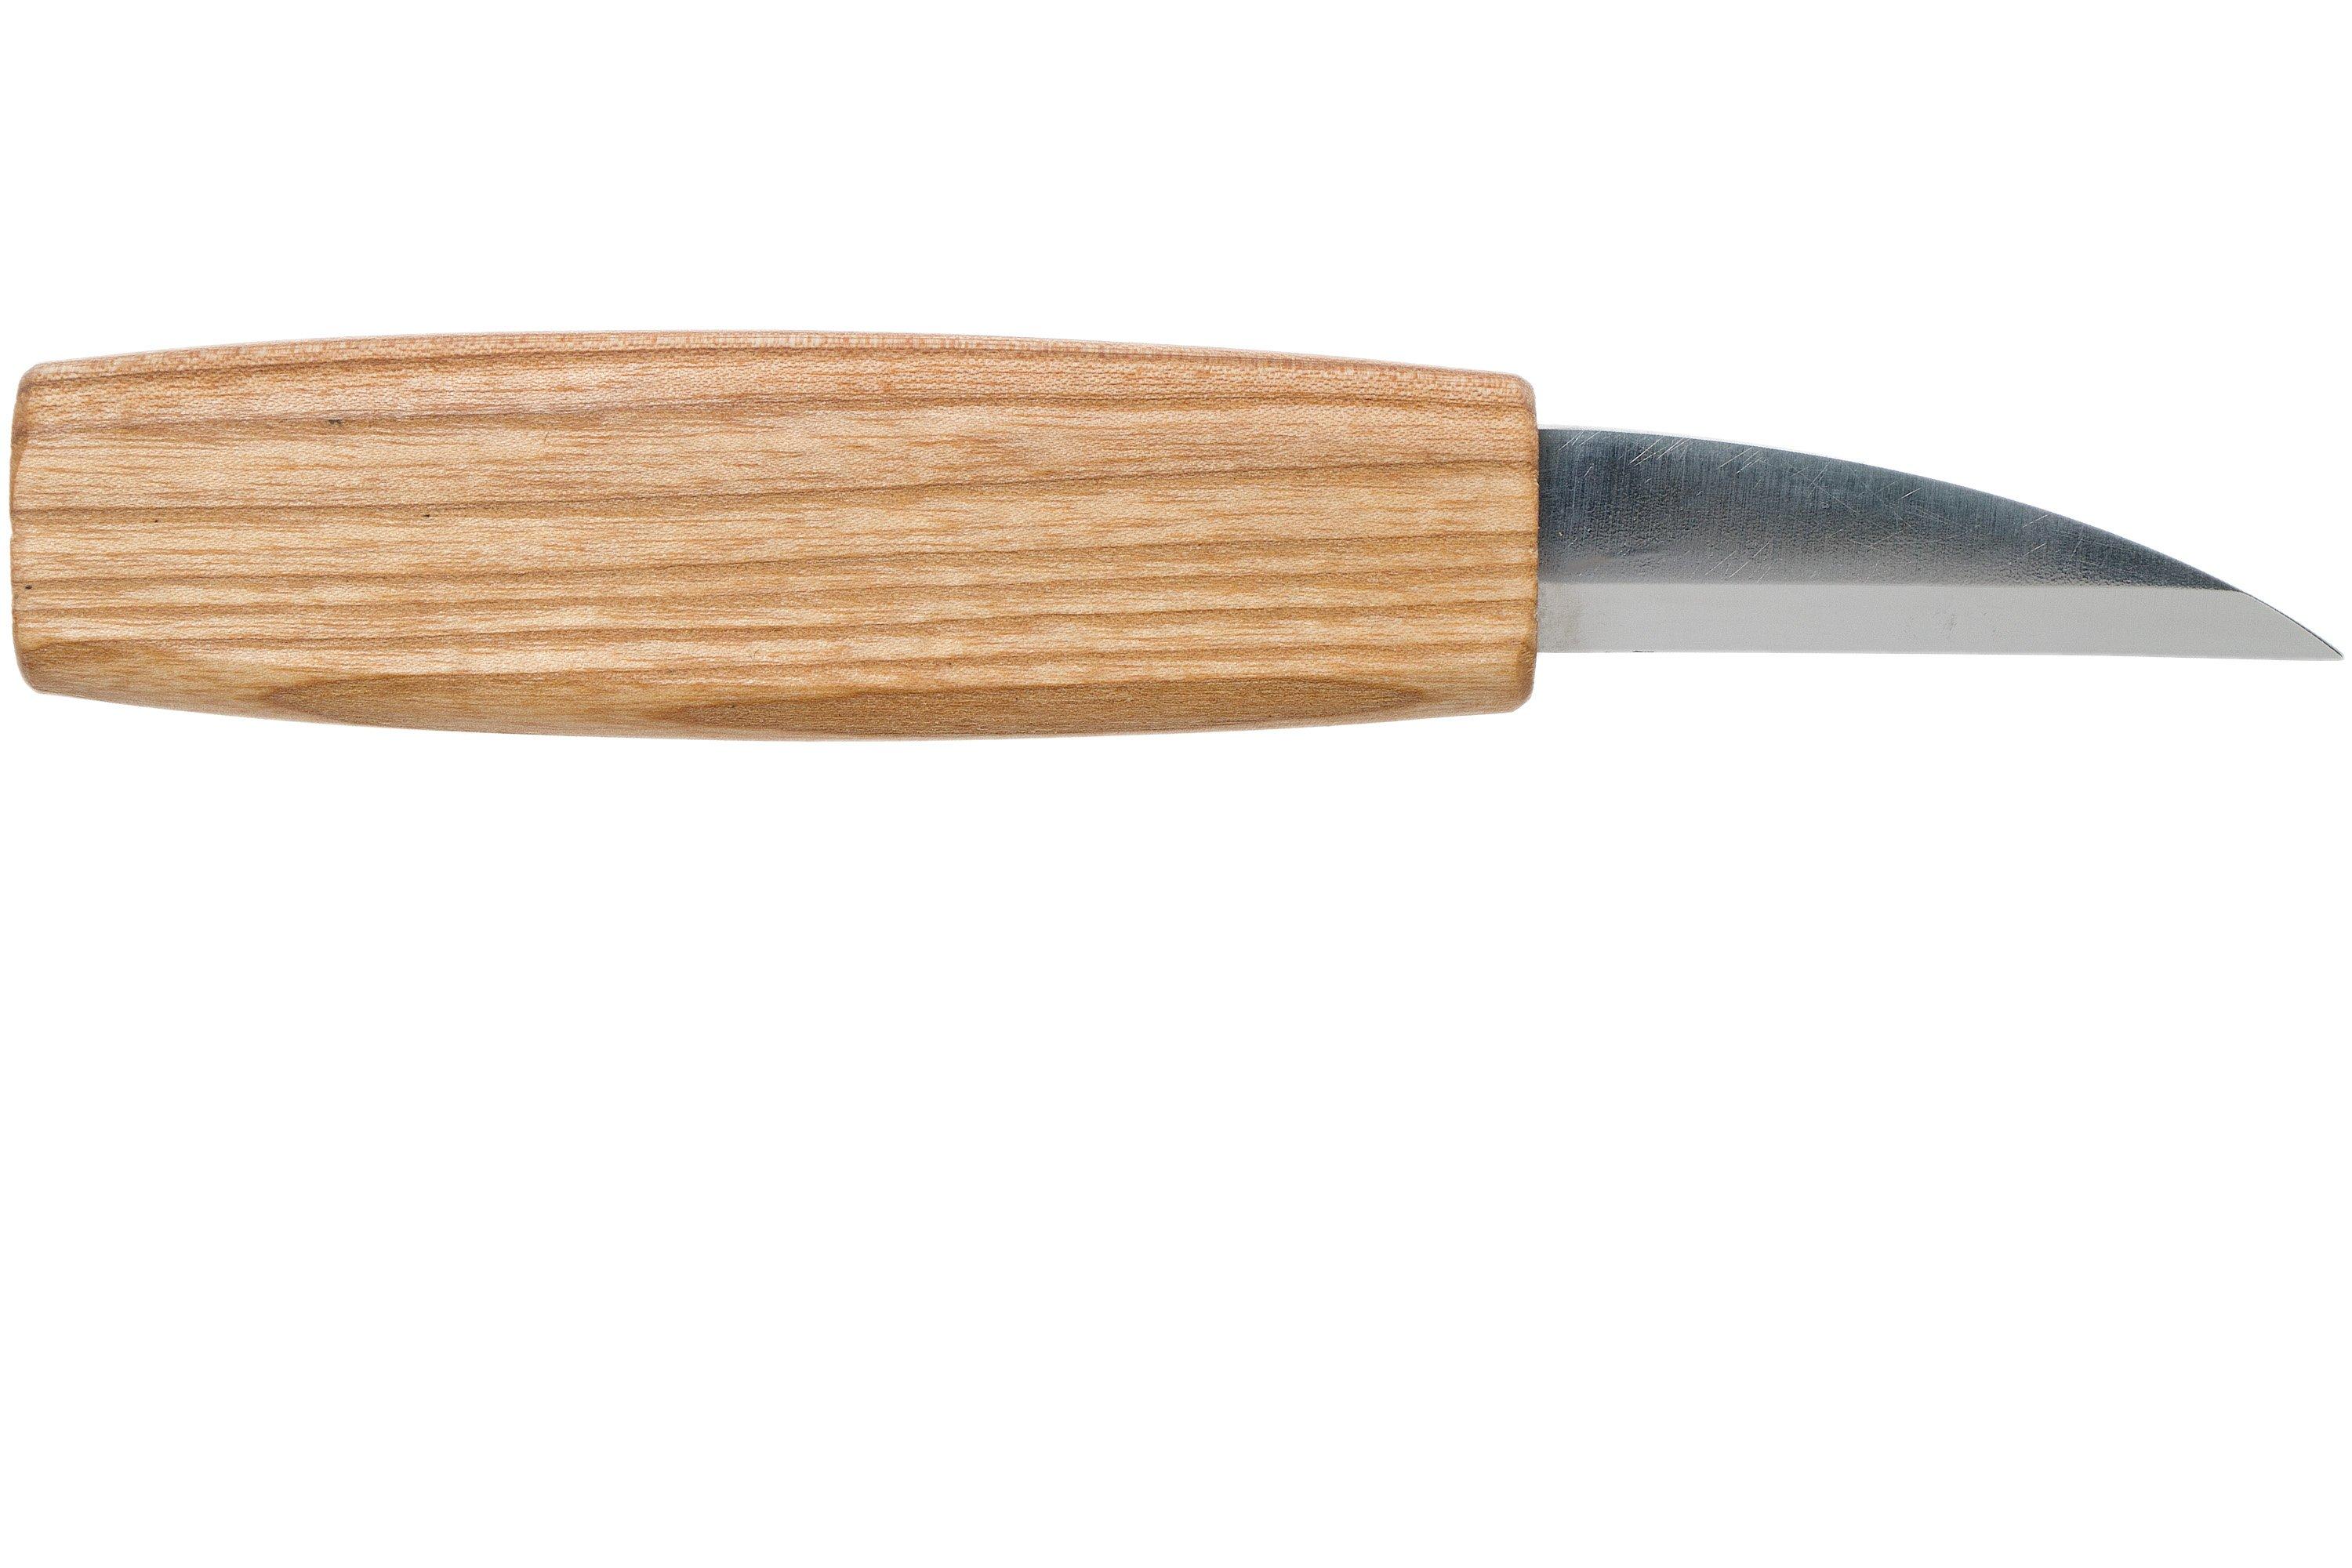 BeaverCraft Whittling Knife C14, wood carving knife